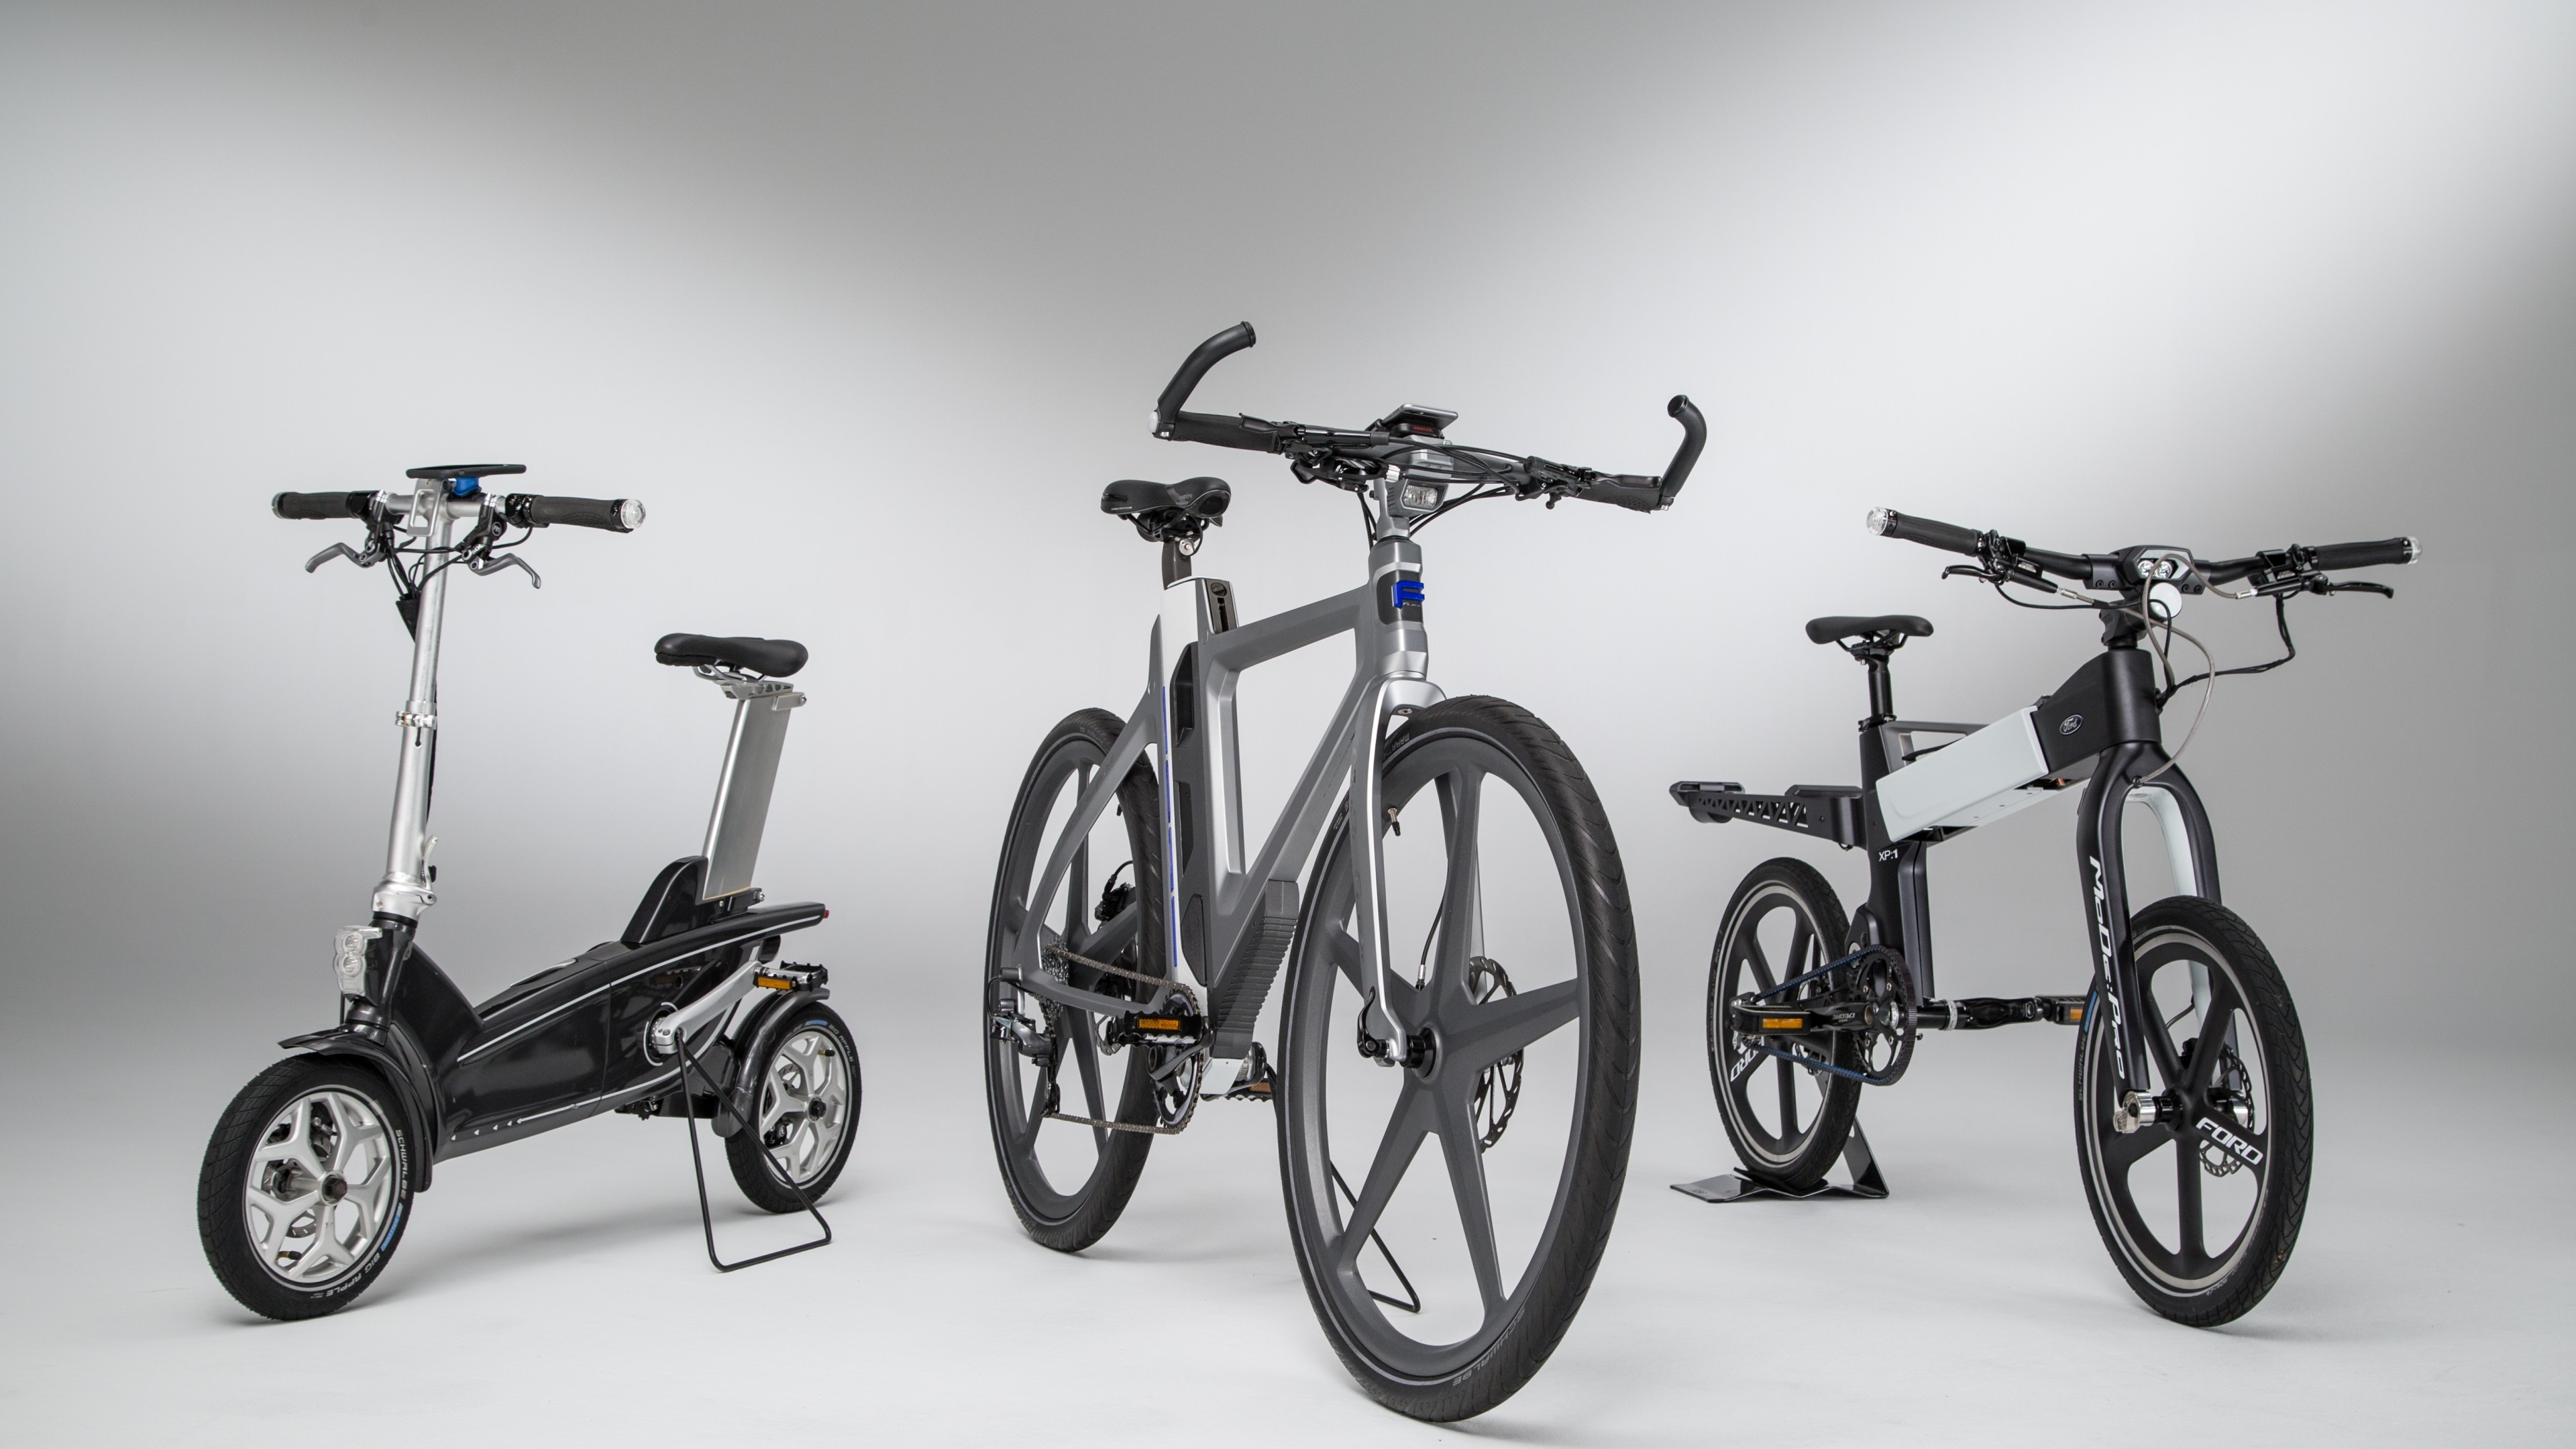 E-bike, Ford mode flex, Electric bicicle, Cars bikes, 3840x2160 4K Desktop